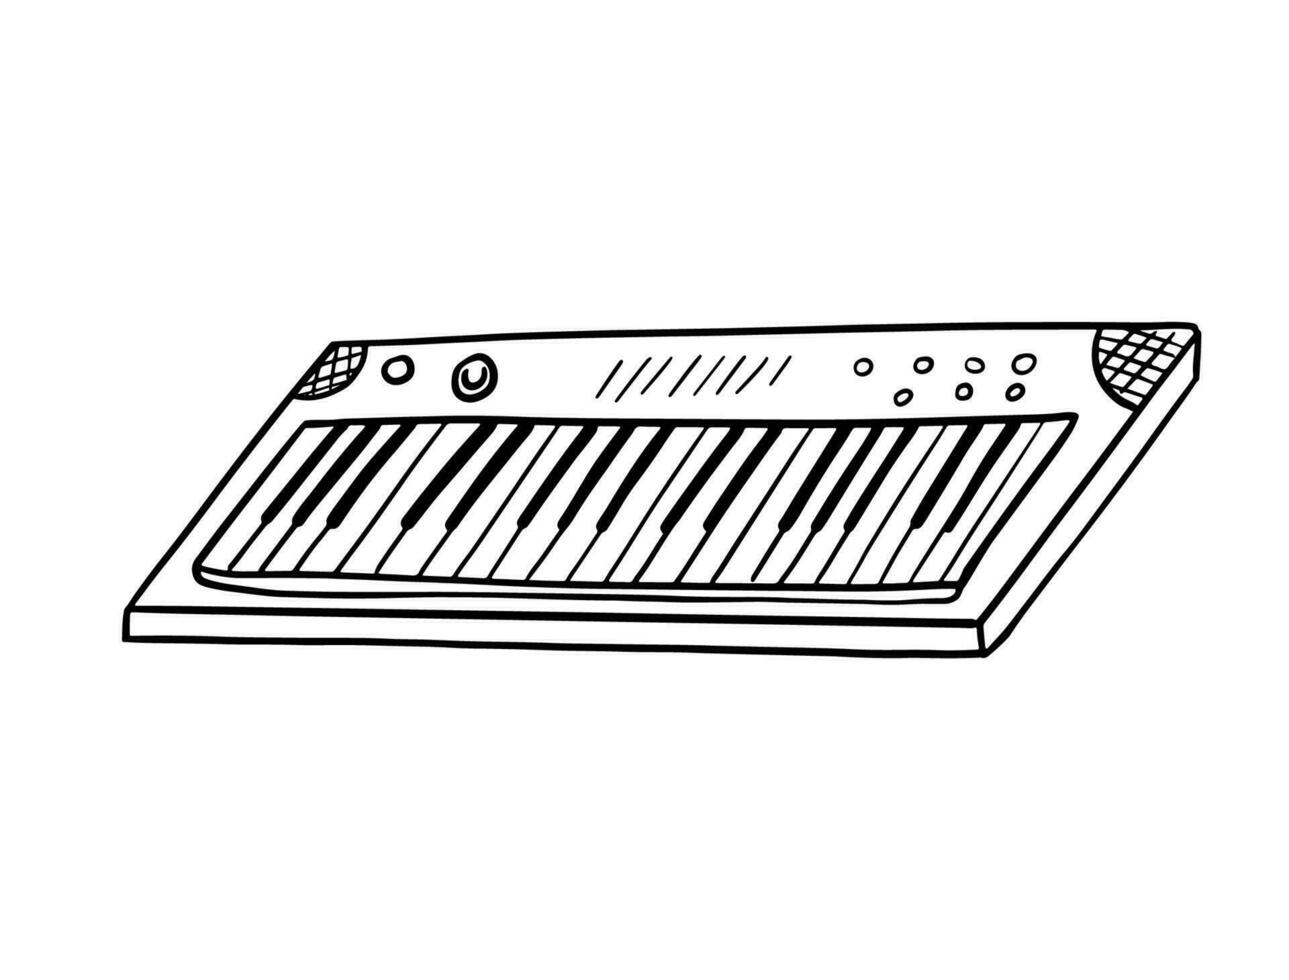 tekening synthesizer. vector schetsen van musical instrument, zwart schets illustratie